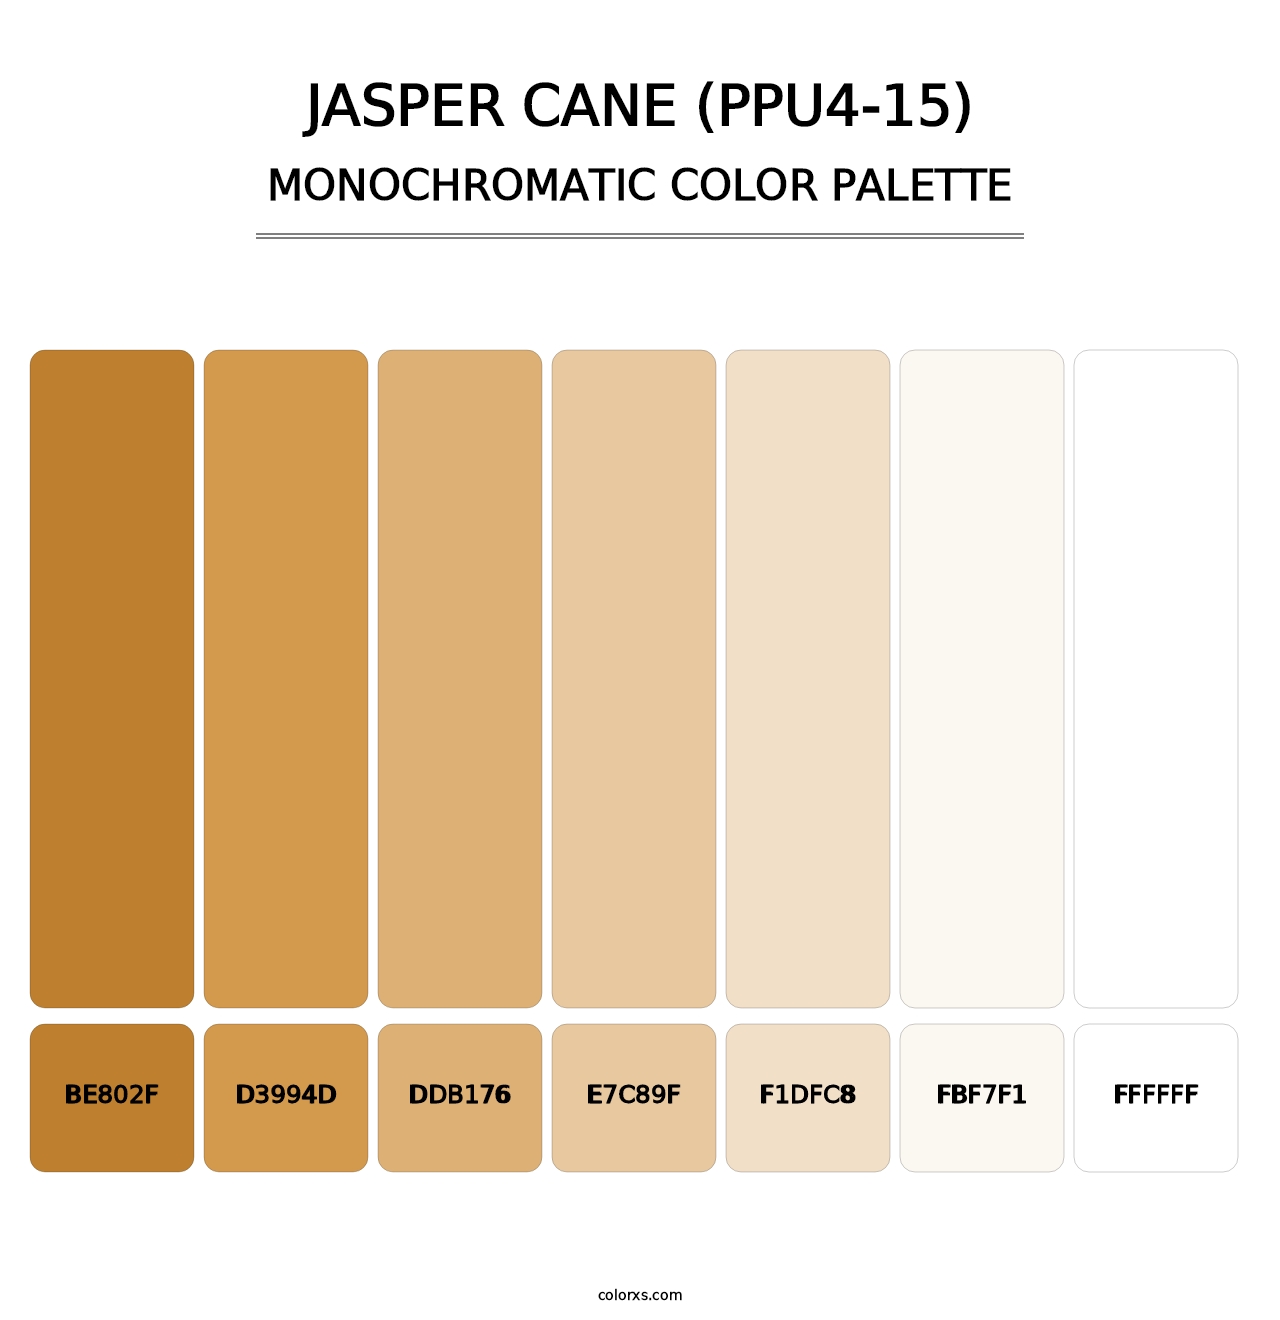 Jasper Cane (PPU4-15) - Monochromatic Color Palette